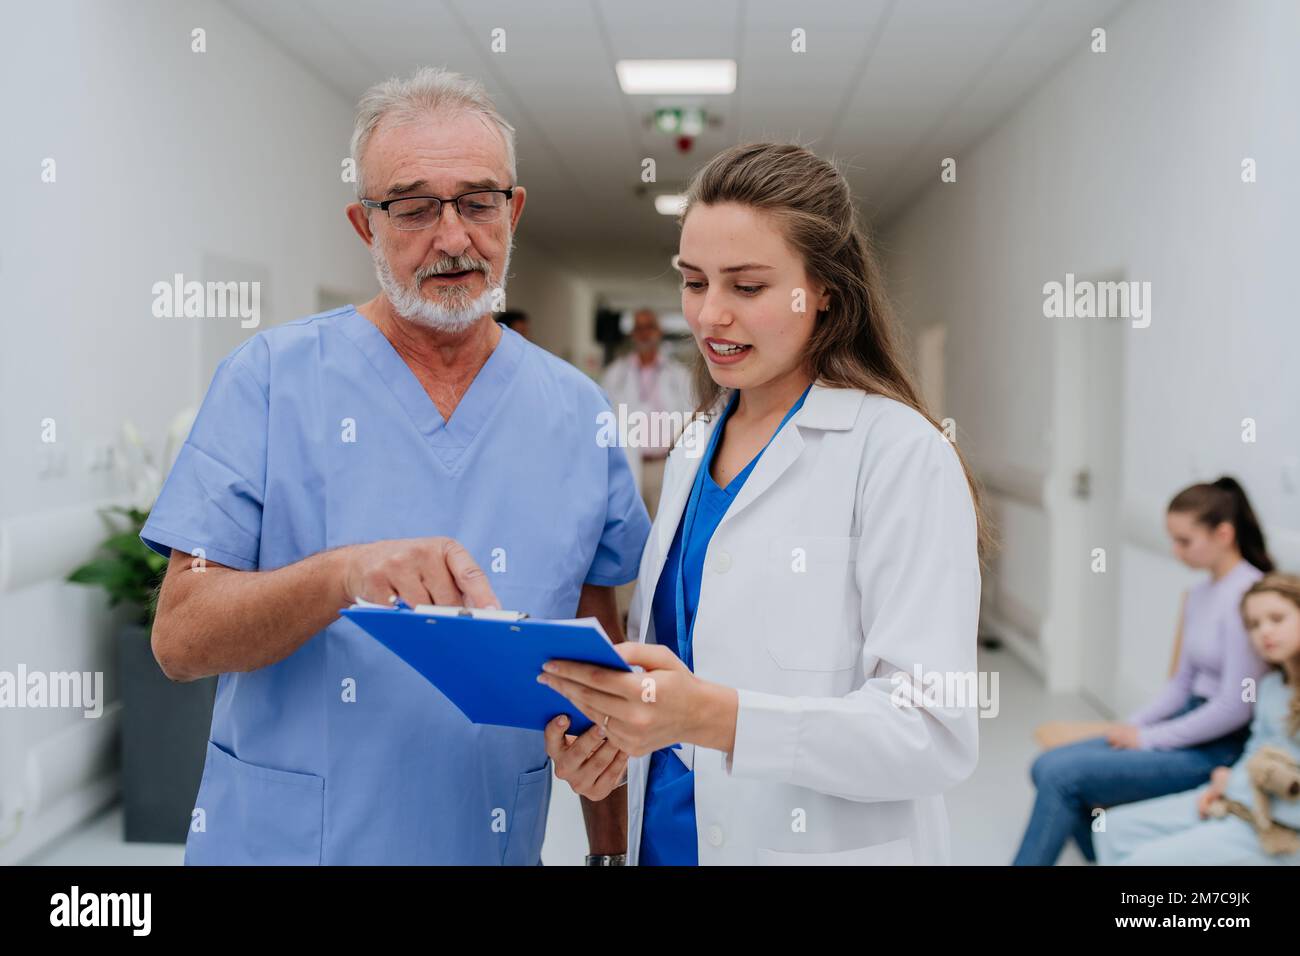 Un médecin plus âgé donne des conseils à son jeune collègue, discutant dans le couloir de l'hôpital. Concept de soins de santé. Banque D'Images